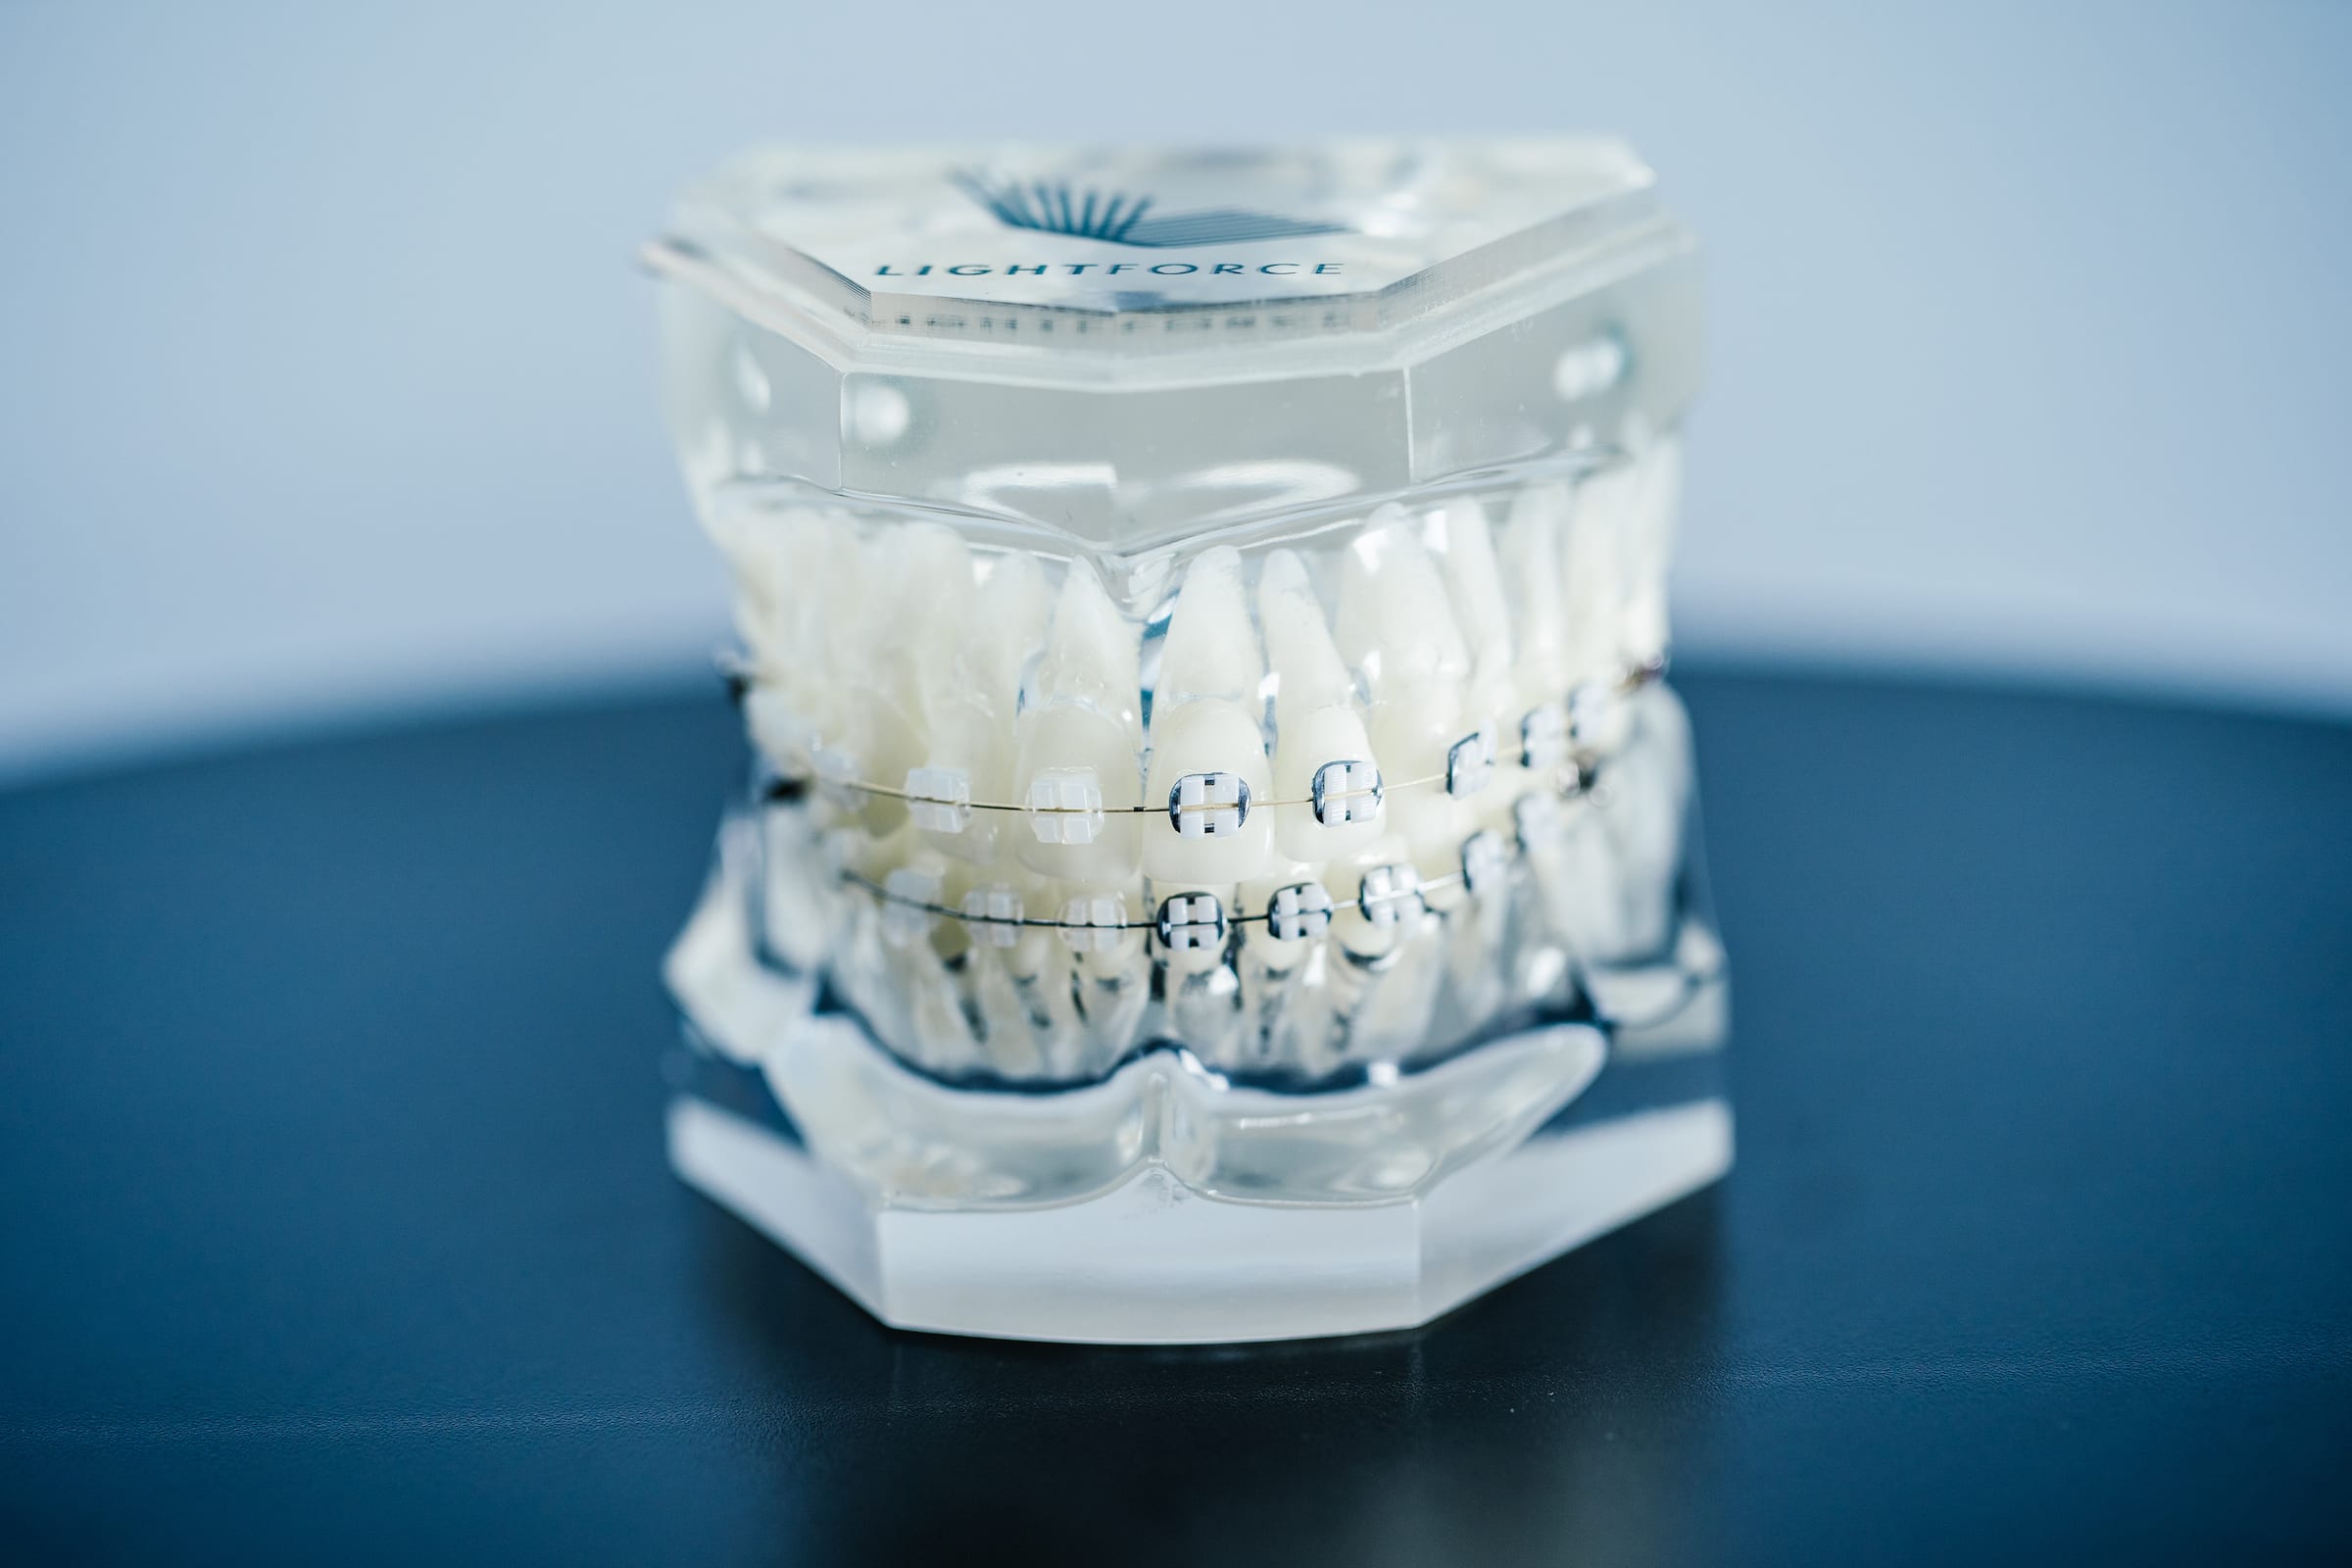 LightForce Orthodontics custom orthodontic treatment mold